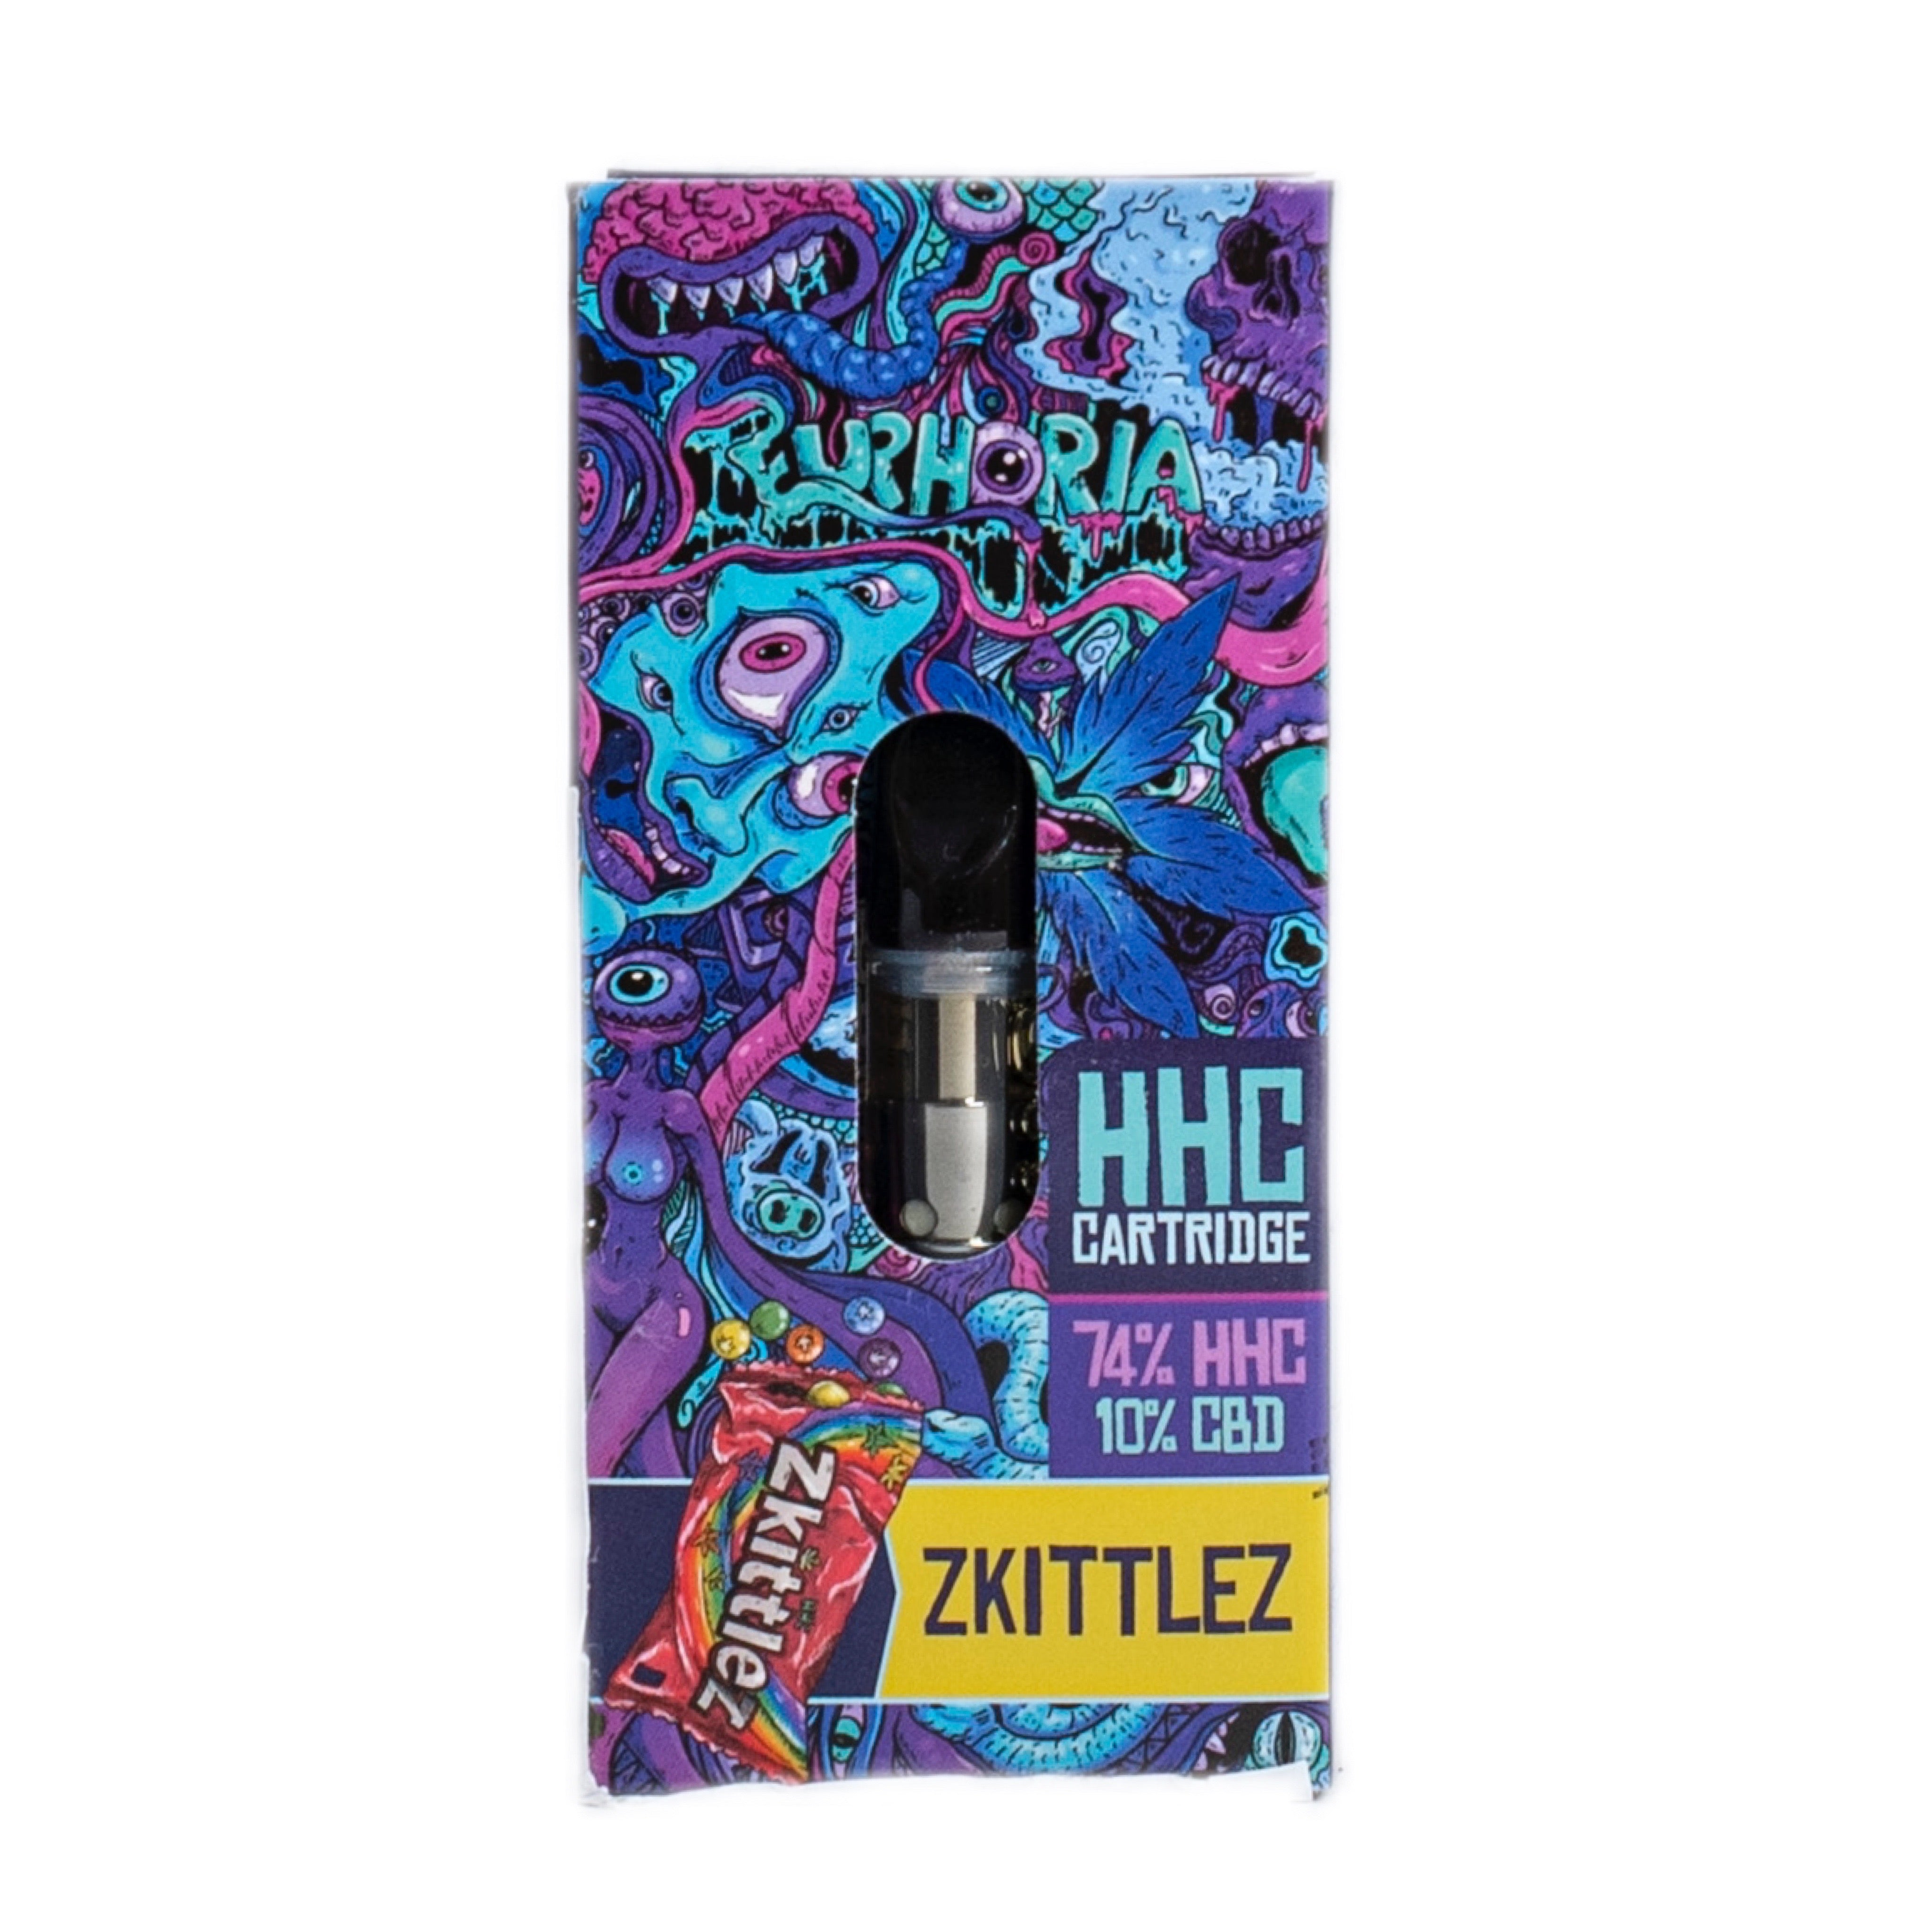 Euphoria Cartridge (Dab Pen) of HHC - Zkittlez - 97% HHC/500MG - 0.5ML - 300 puffs